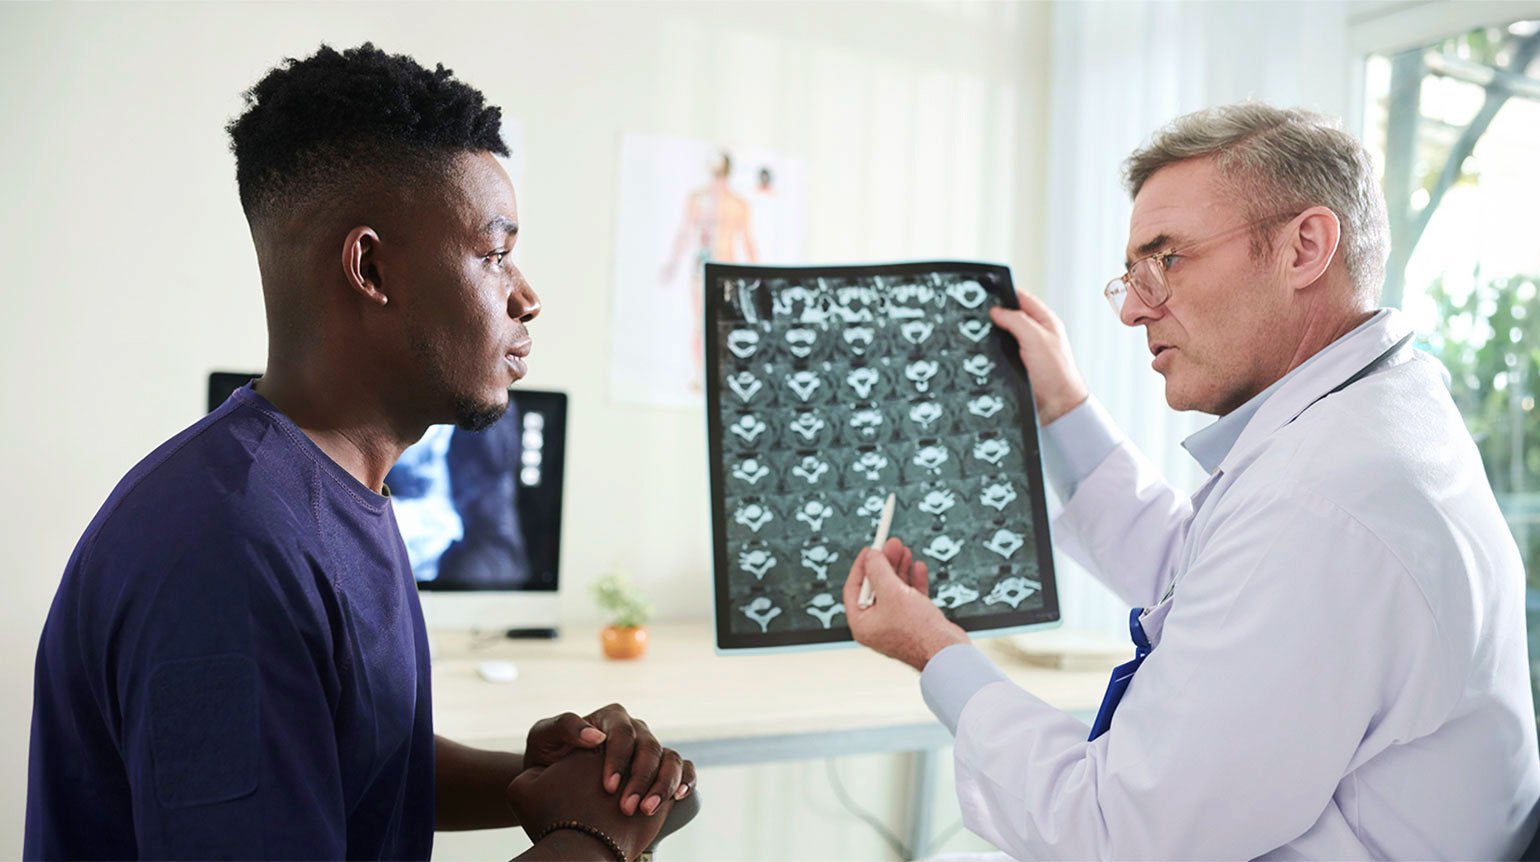 Arzt erklärt Patienten MRT-Bilder eines Bandscheibenvorfalls in der Brustwirbelsäule. Er deutet mit Kugelschreiber auf eine Stelle im Bild. Beide sehen sich an, Patient hört aufmerksam zu. Im Hintergrund Schreibtisch, Bildschirm, kleine Pflanze.